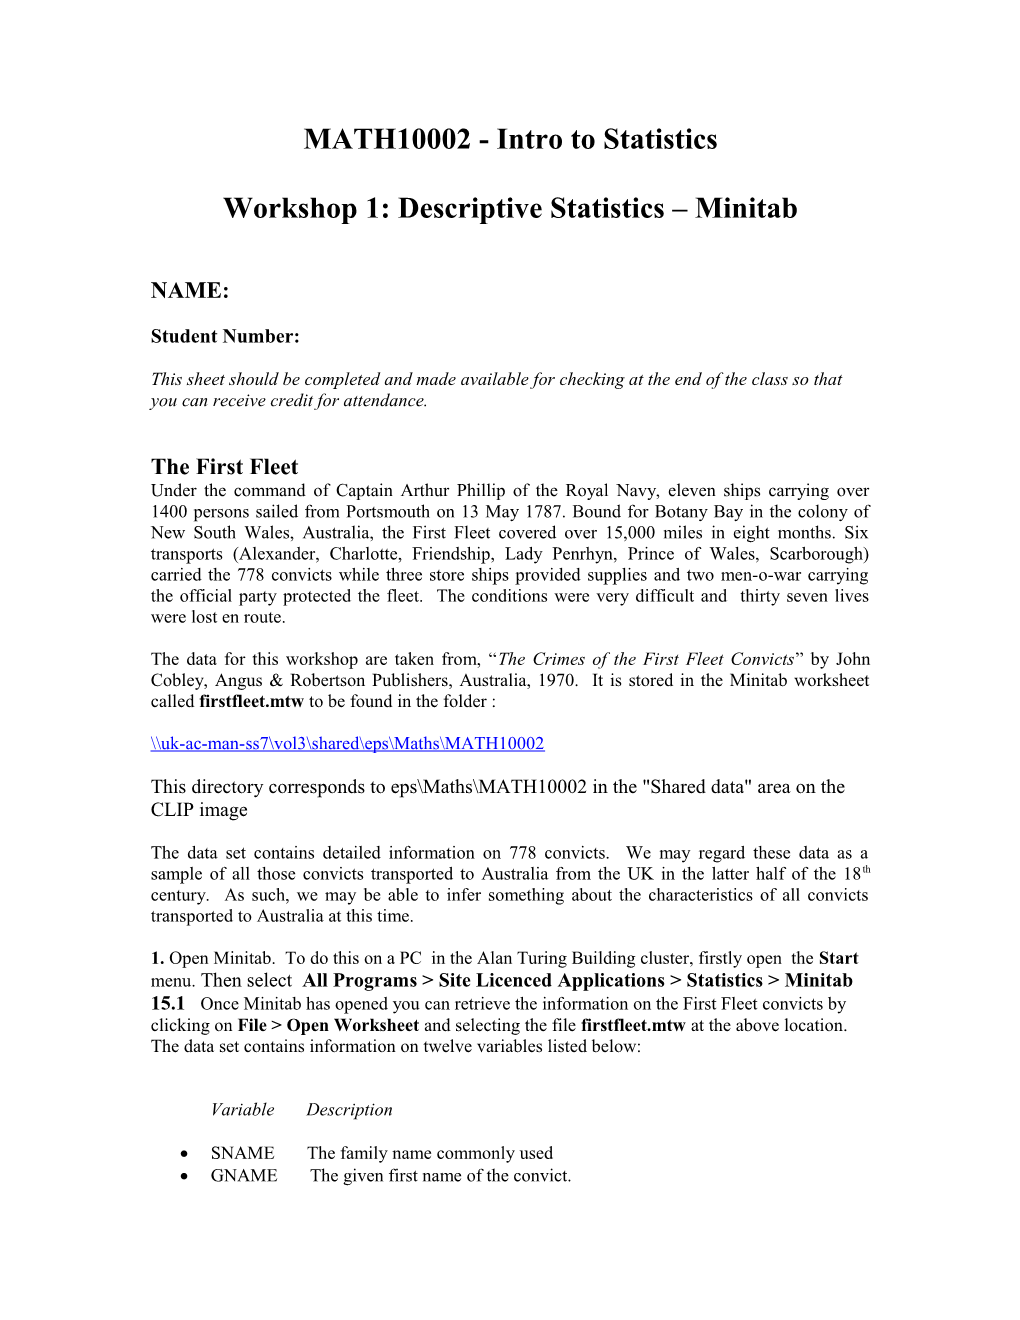 Workshop 1: Descriptive Statistics Minitab